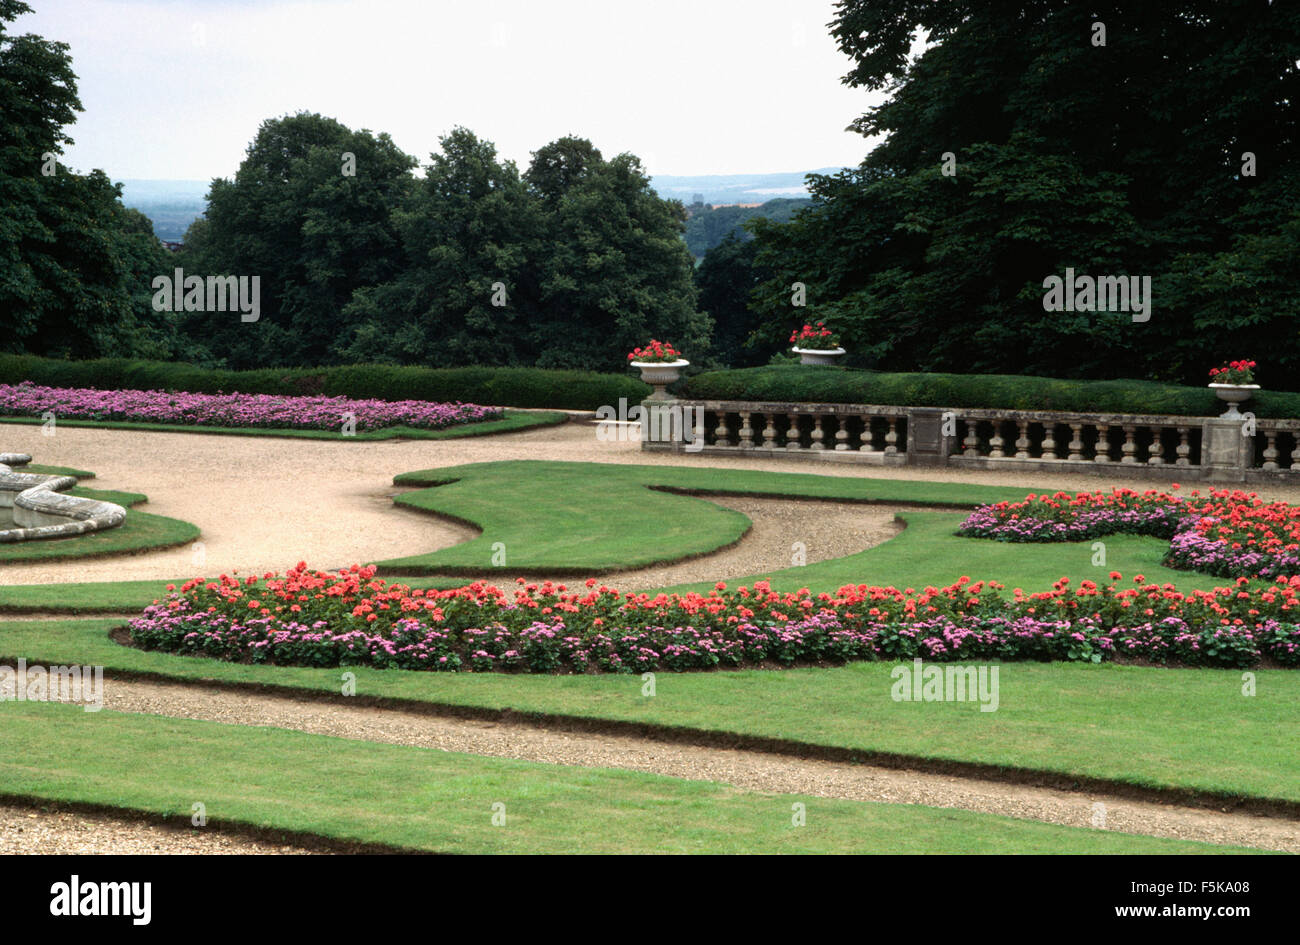 Annuari colorati in un parterre formale in un paese grande giardino in estate Foto Stock